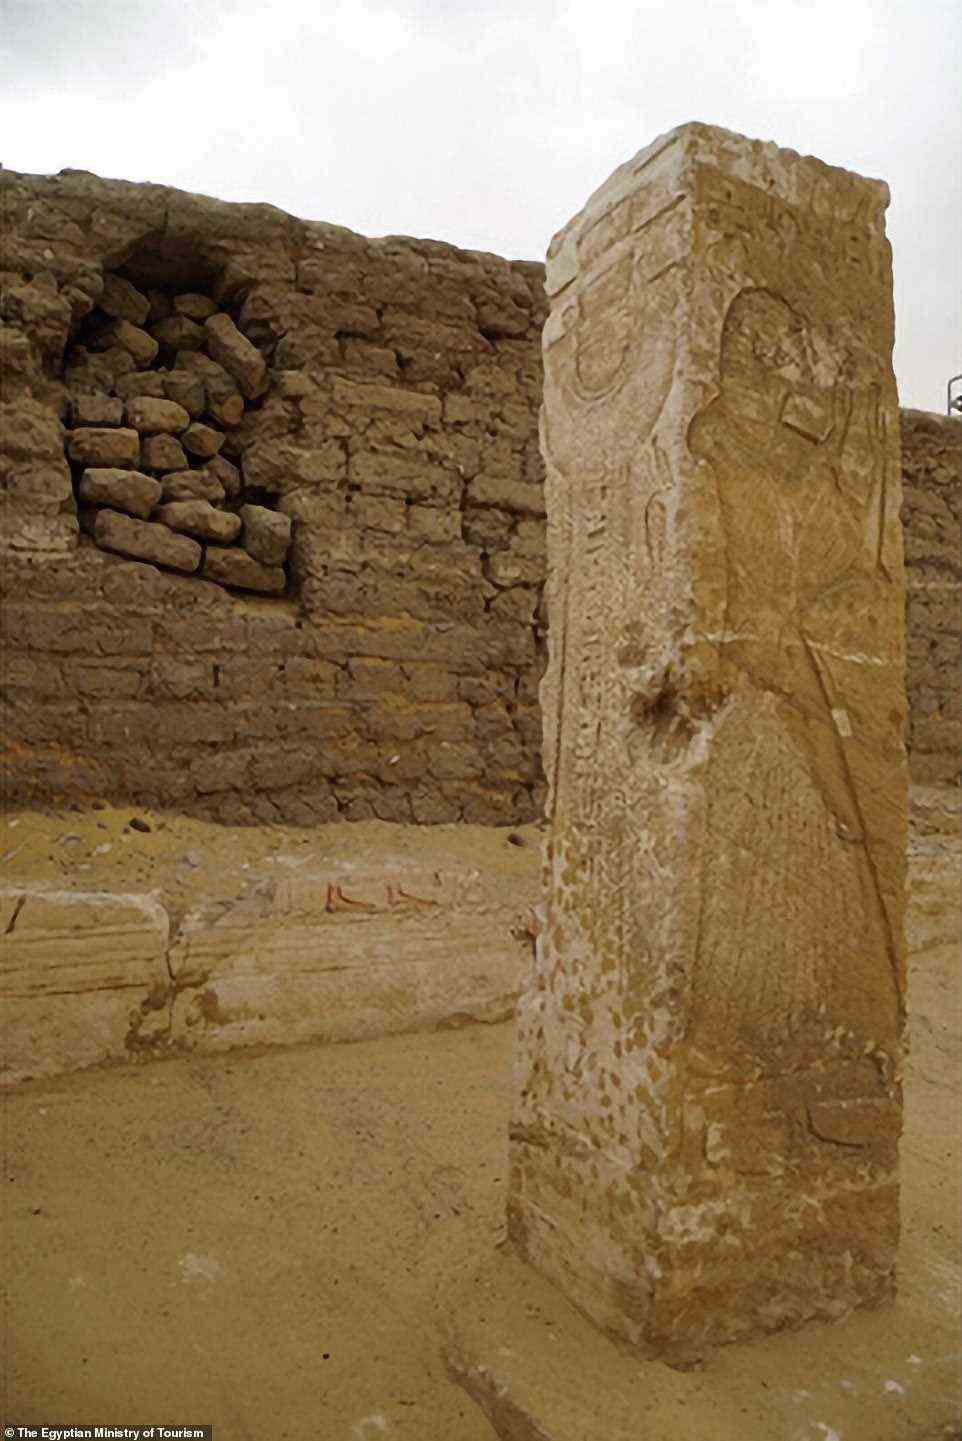 Tief im Sand vergraben wurden zahlreiche gravierte Steinblöcke gefunden, ebenso wie Säulen in der Form von Osiris, dem ägyptischen Totengott (oben)